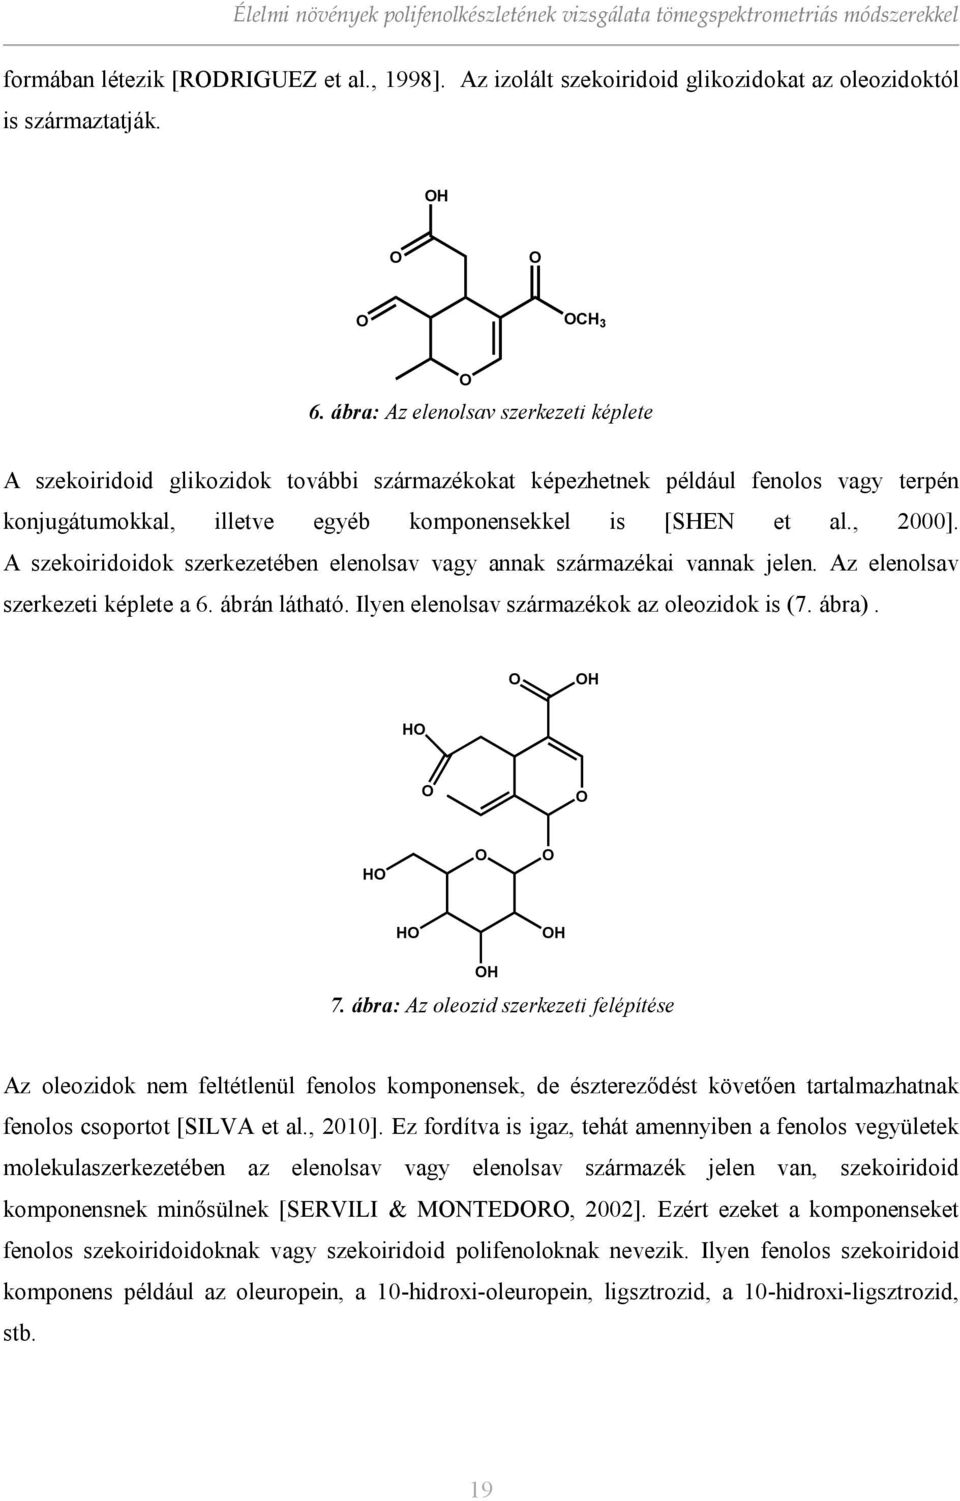 , 2000]. A szekoiridoidok szerkezetében elenolsav vagy annak származékai vannak jelen. Az elenolsav szerkezeti képlete a 6. ábrán látható. Ilyen elenolsav származékok az oleozidok is (7. ábra).